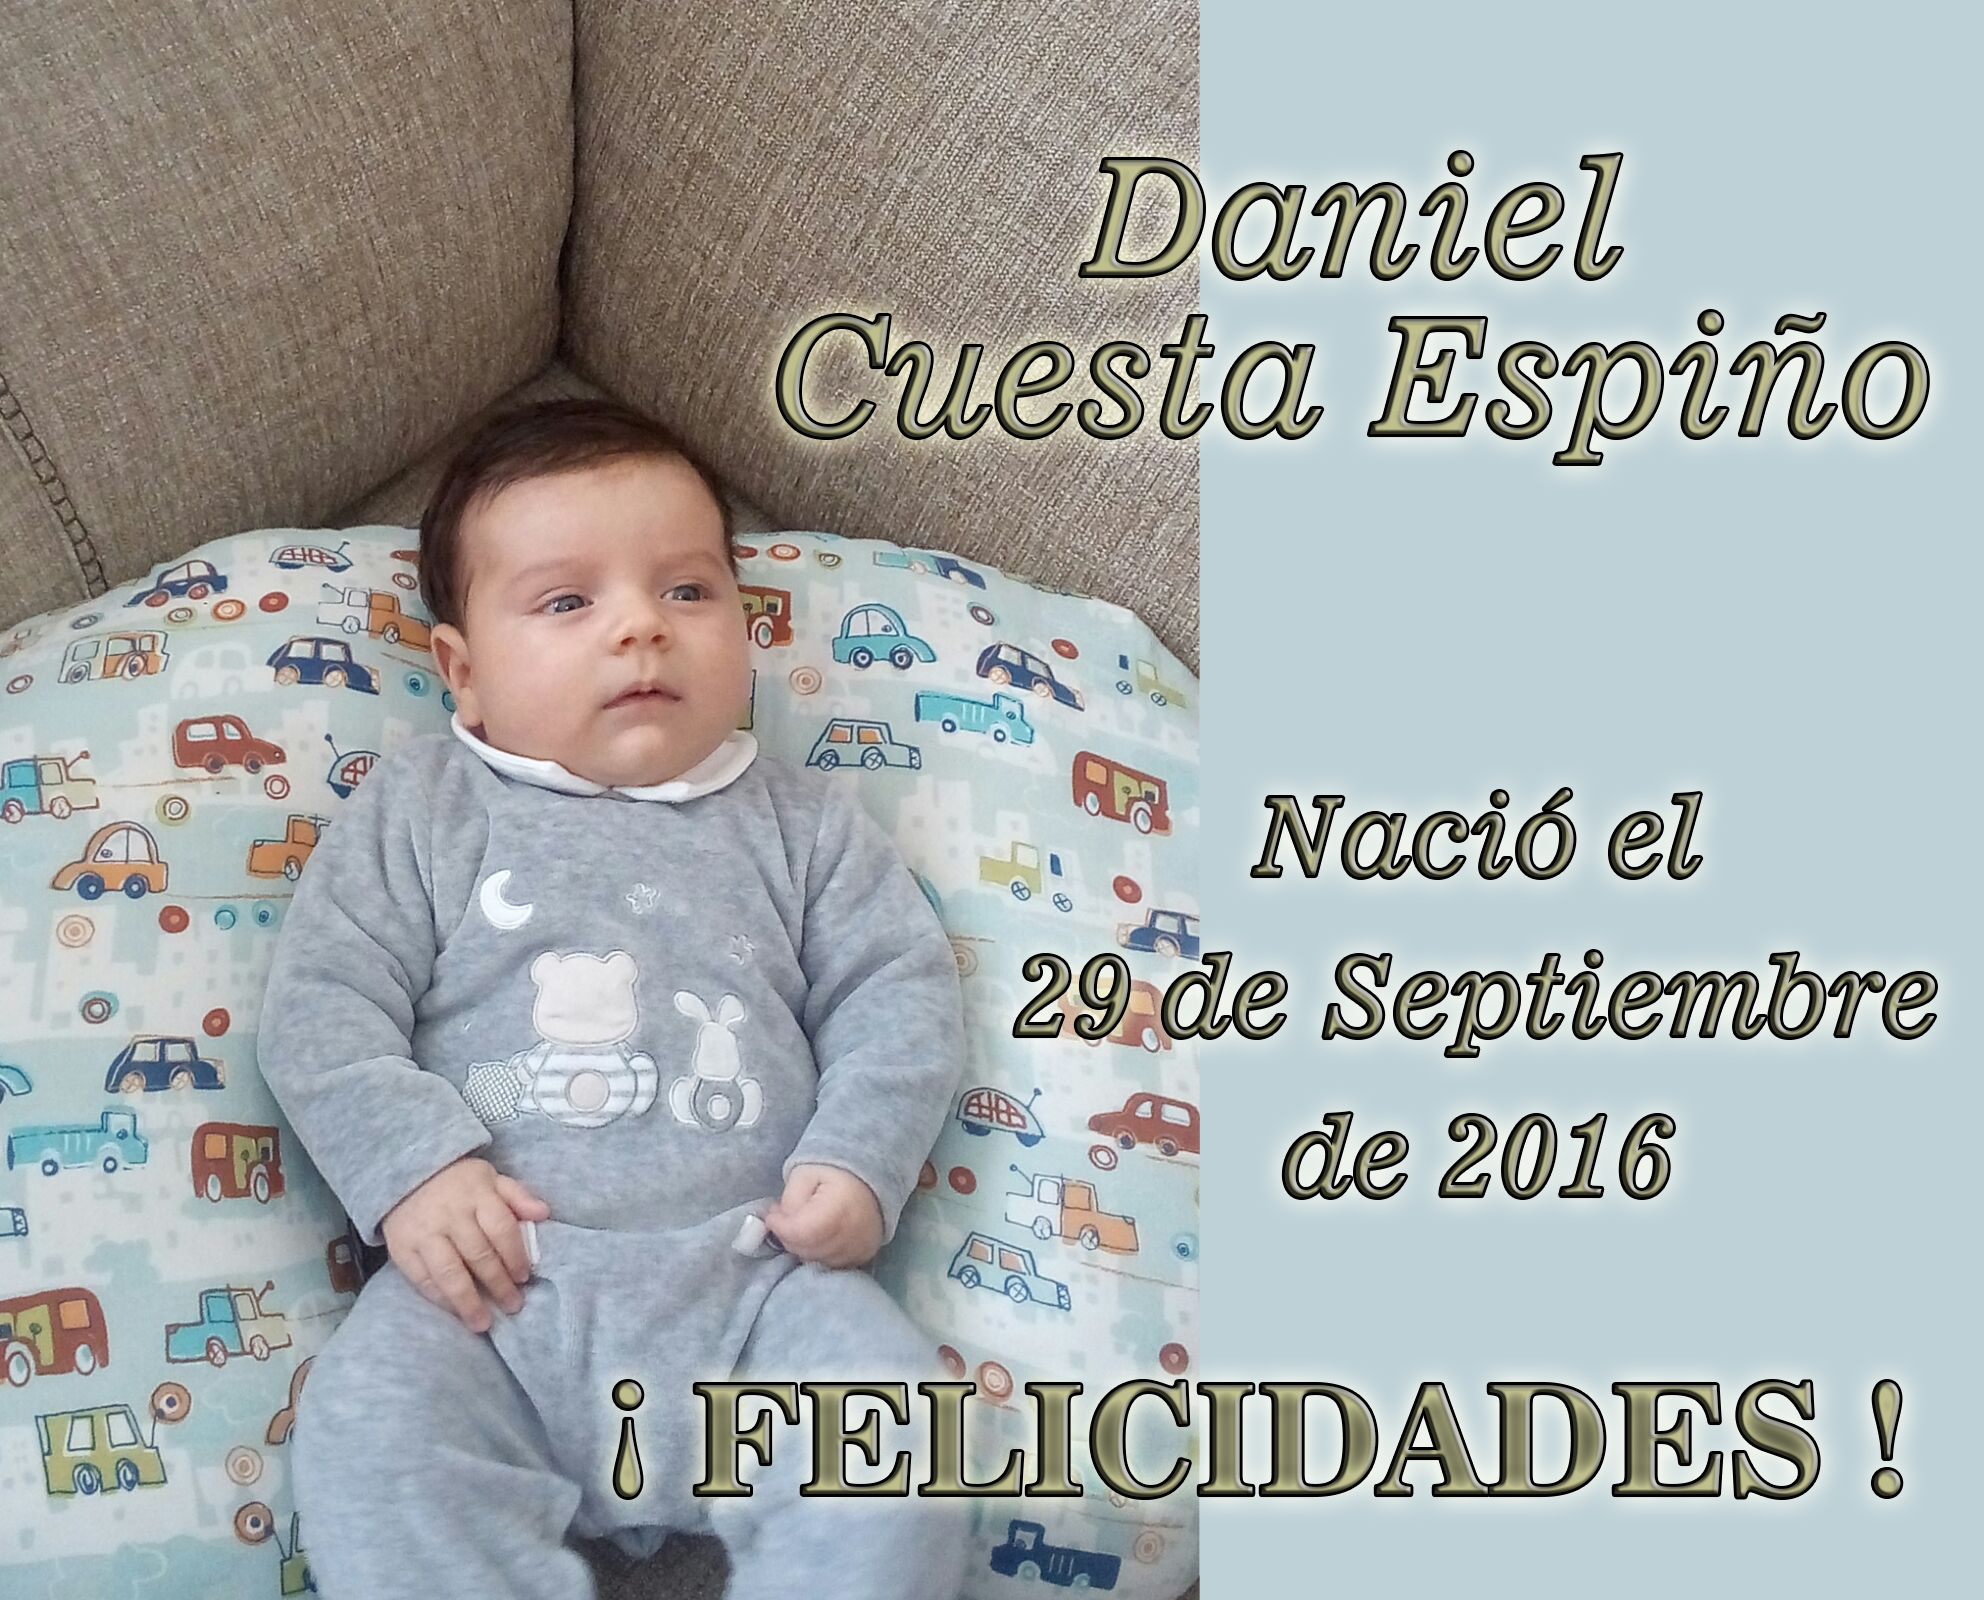 Nacimiento de Daniel Cuesta Espiño, el 29-09-2016